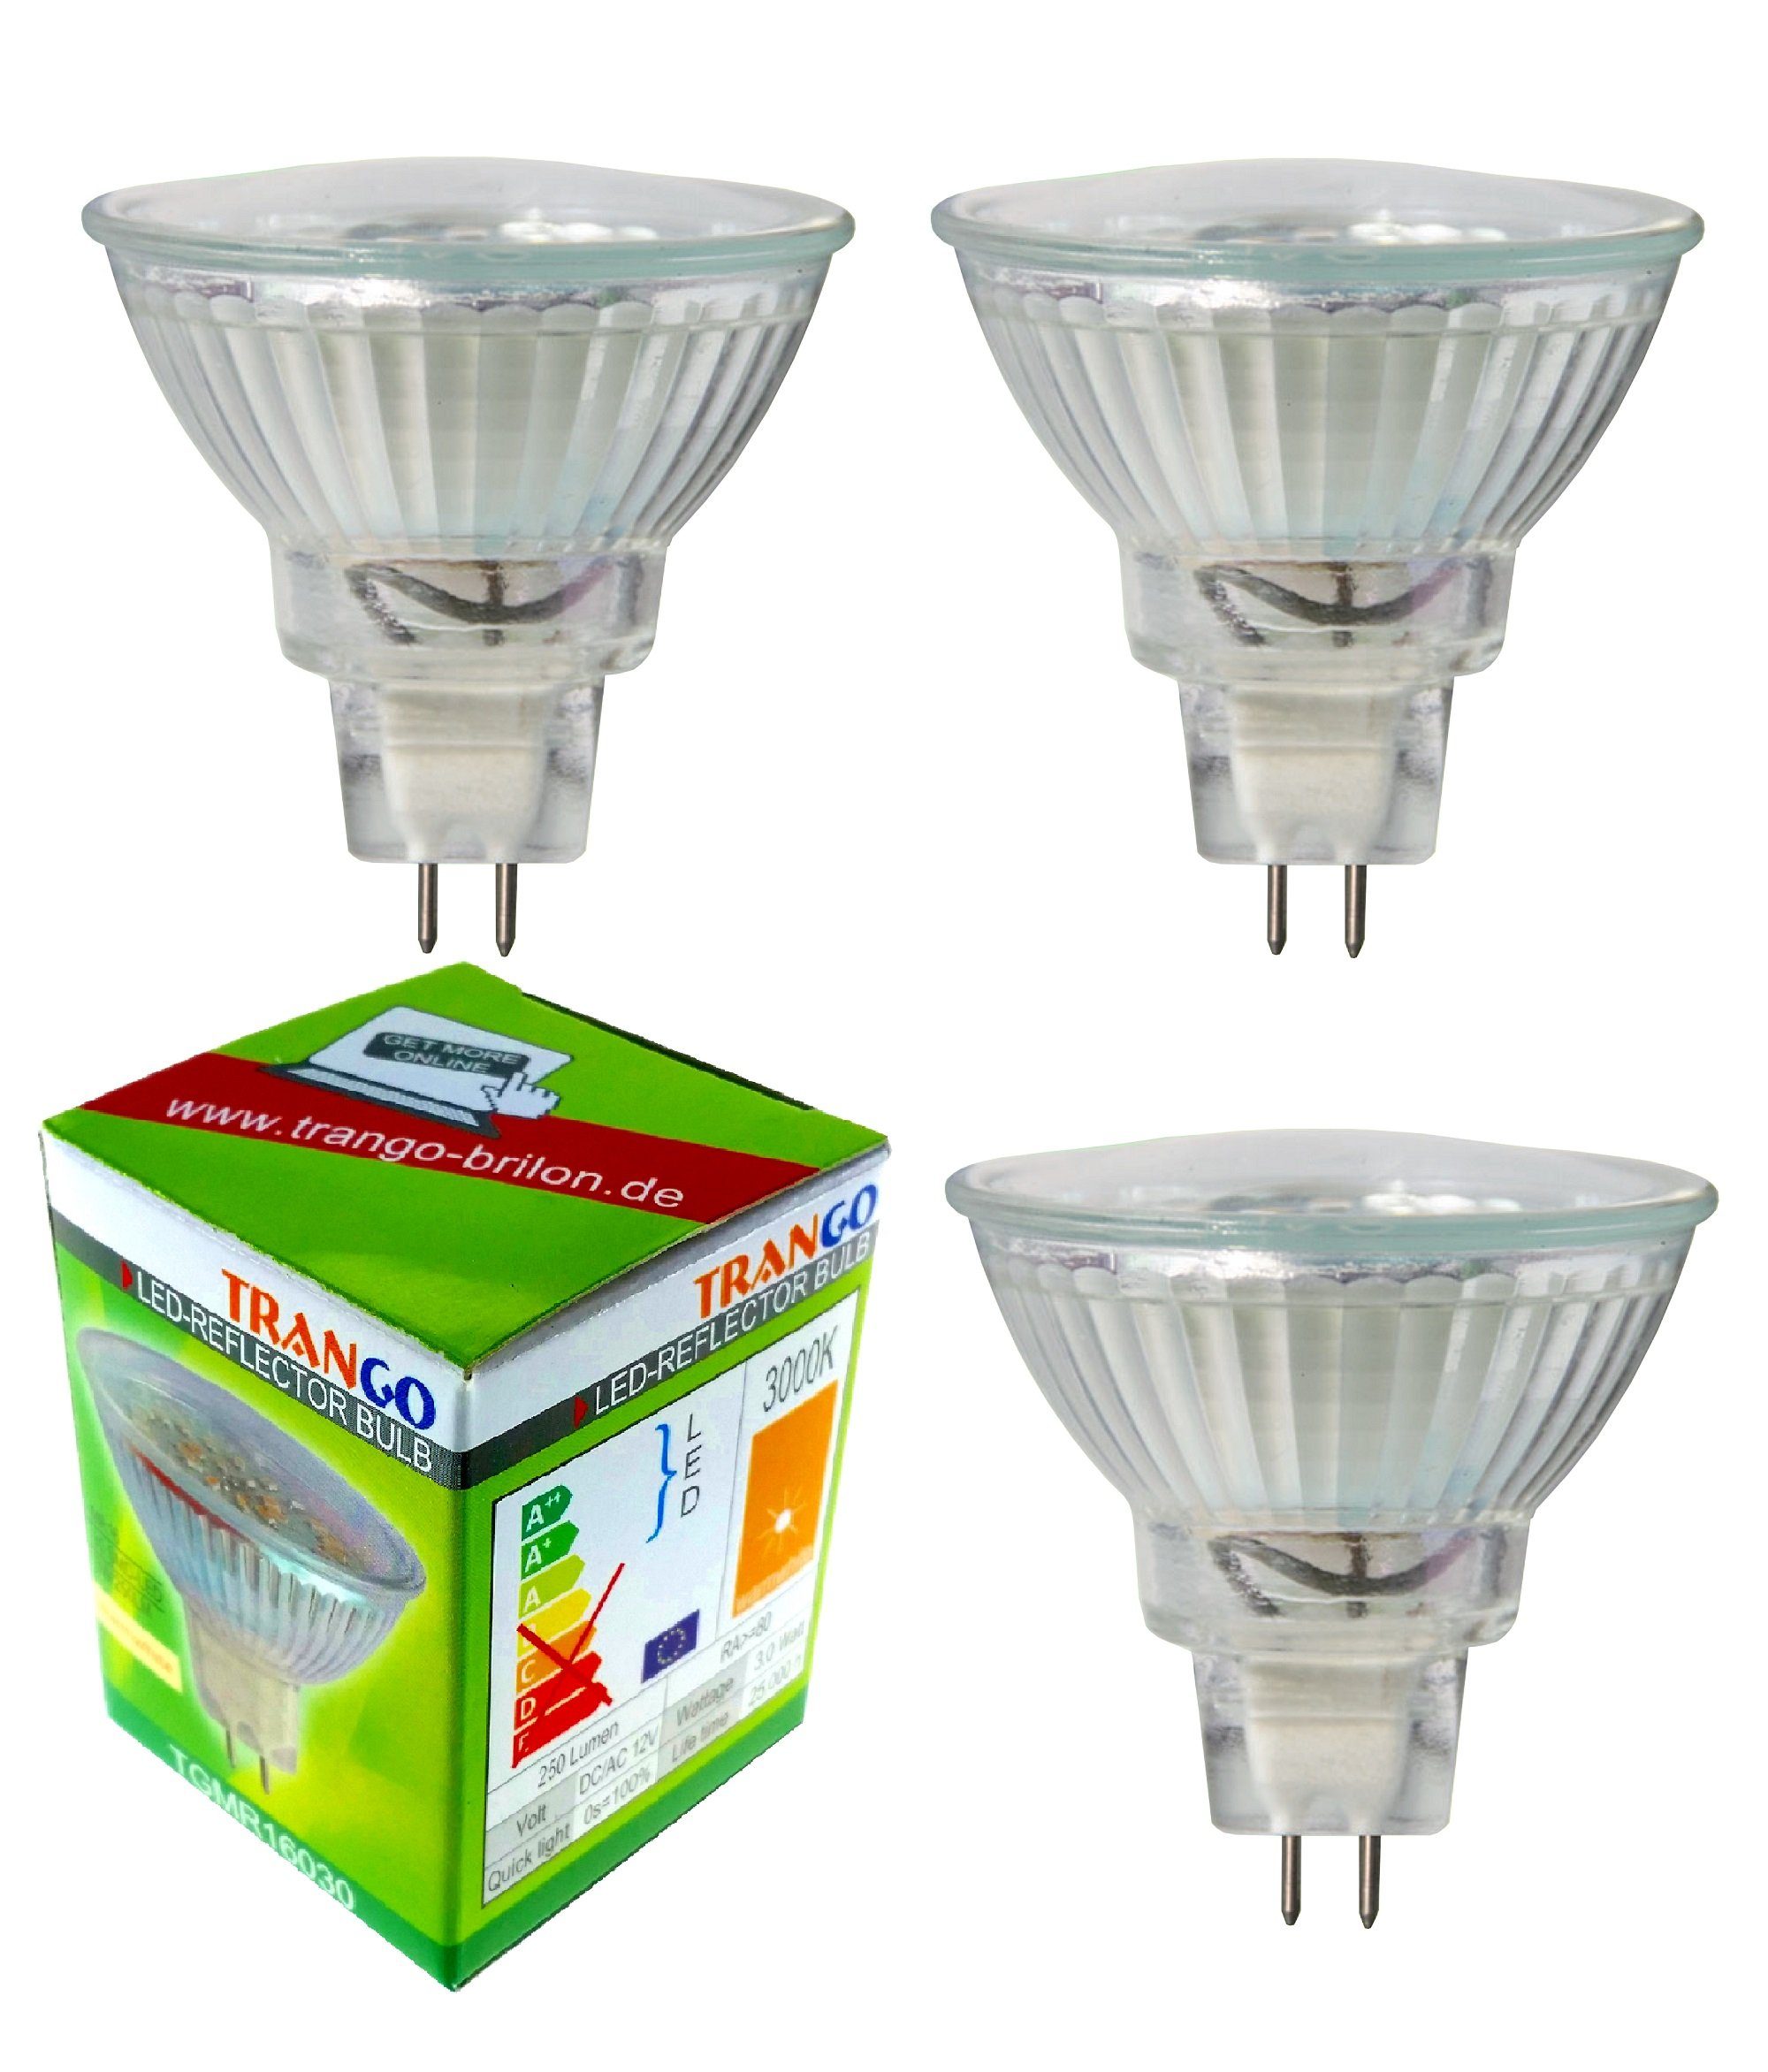 TRANGO LED-Leuchtmittel, 3er Set MR16030 LED Leuchtmittel mit MR16 Fassung zum Austausch herkömmlicher Halogen Leuchtmittel MR16 I GU5.3 I G4 12 Volt 3000K warmweiß, 3 St., Glühlampe, Reflektor Lampe, LED Birnen